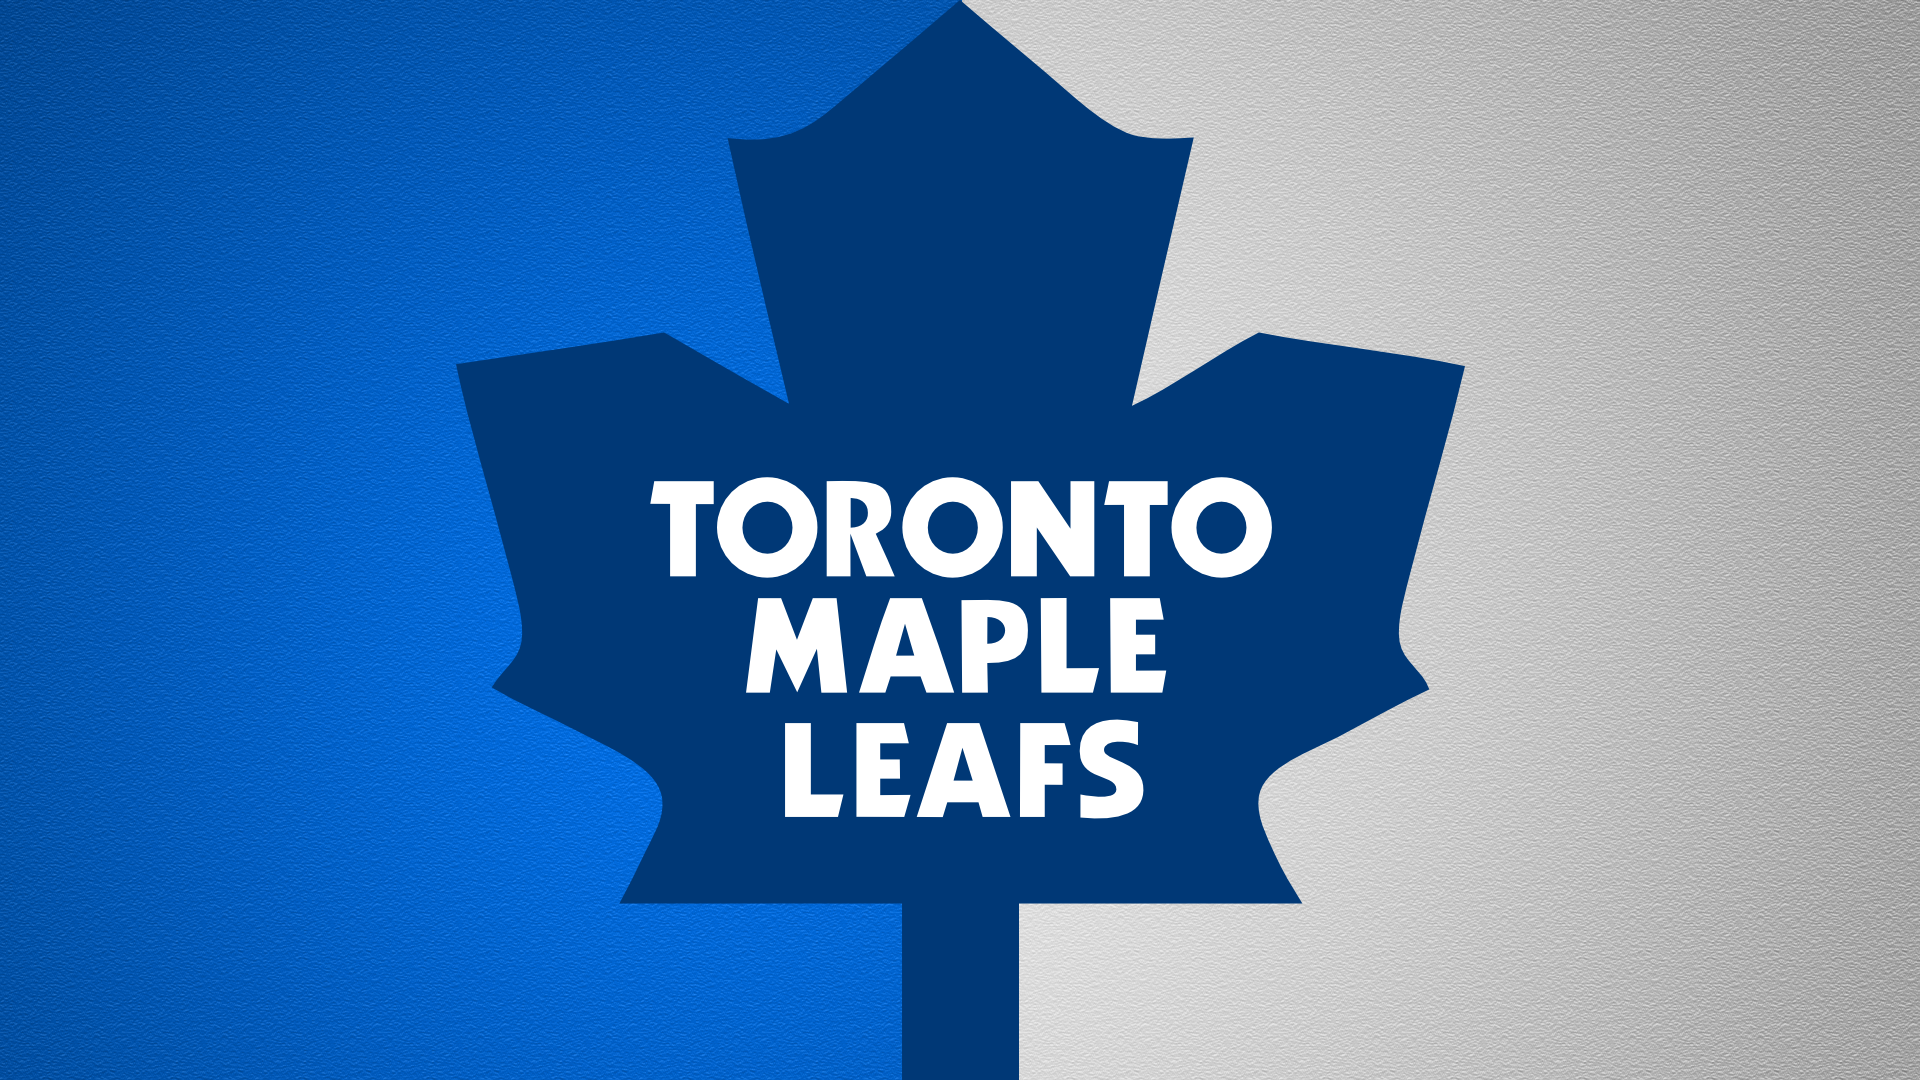 Emblem Logo Nhl Toronto Maple Leafs 1920x1080